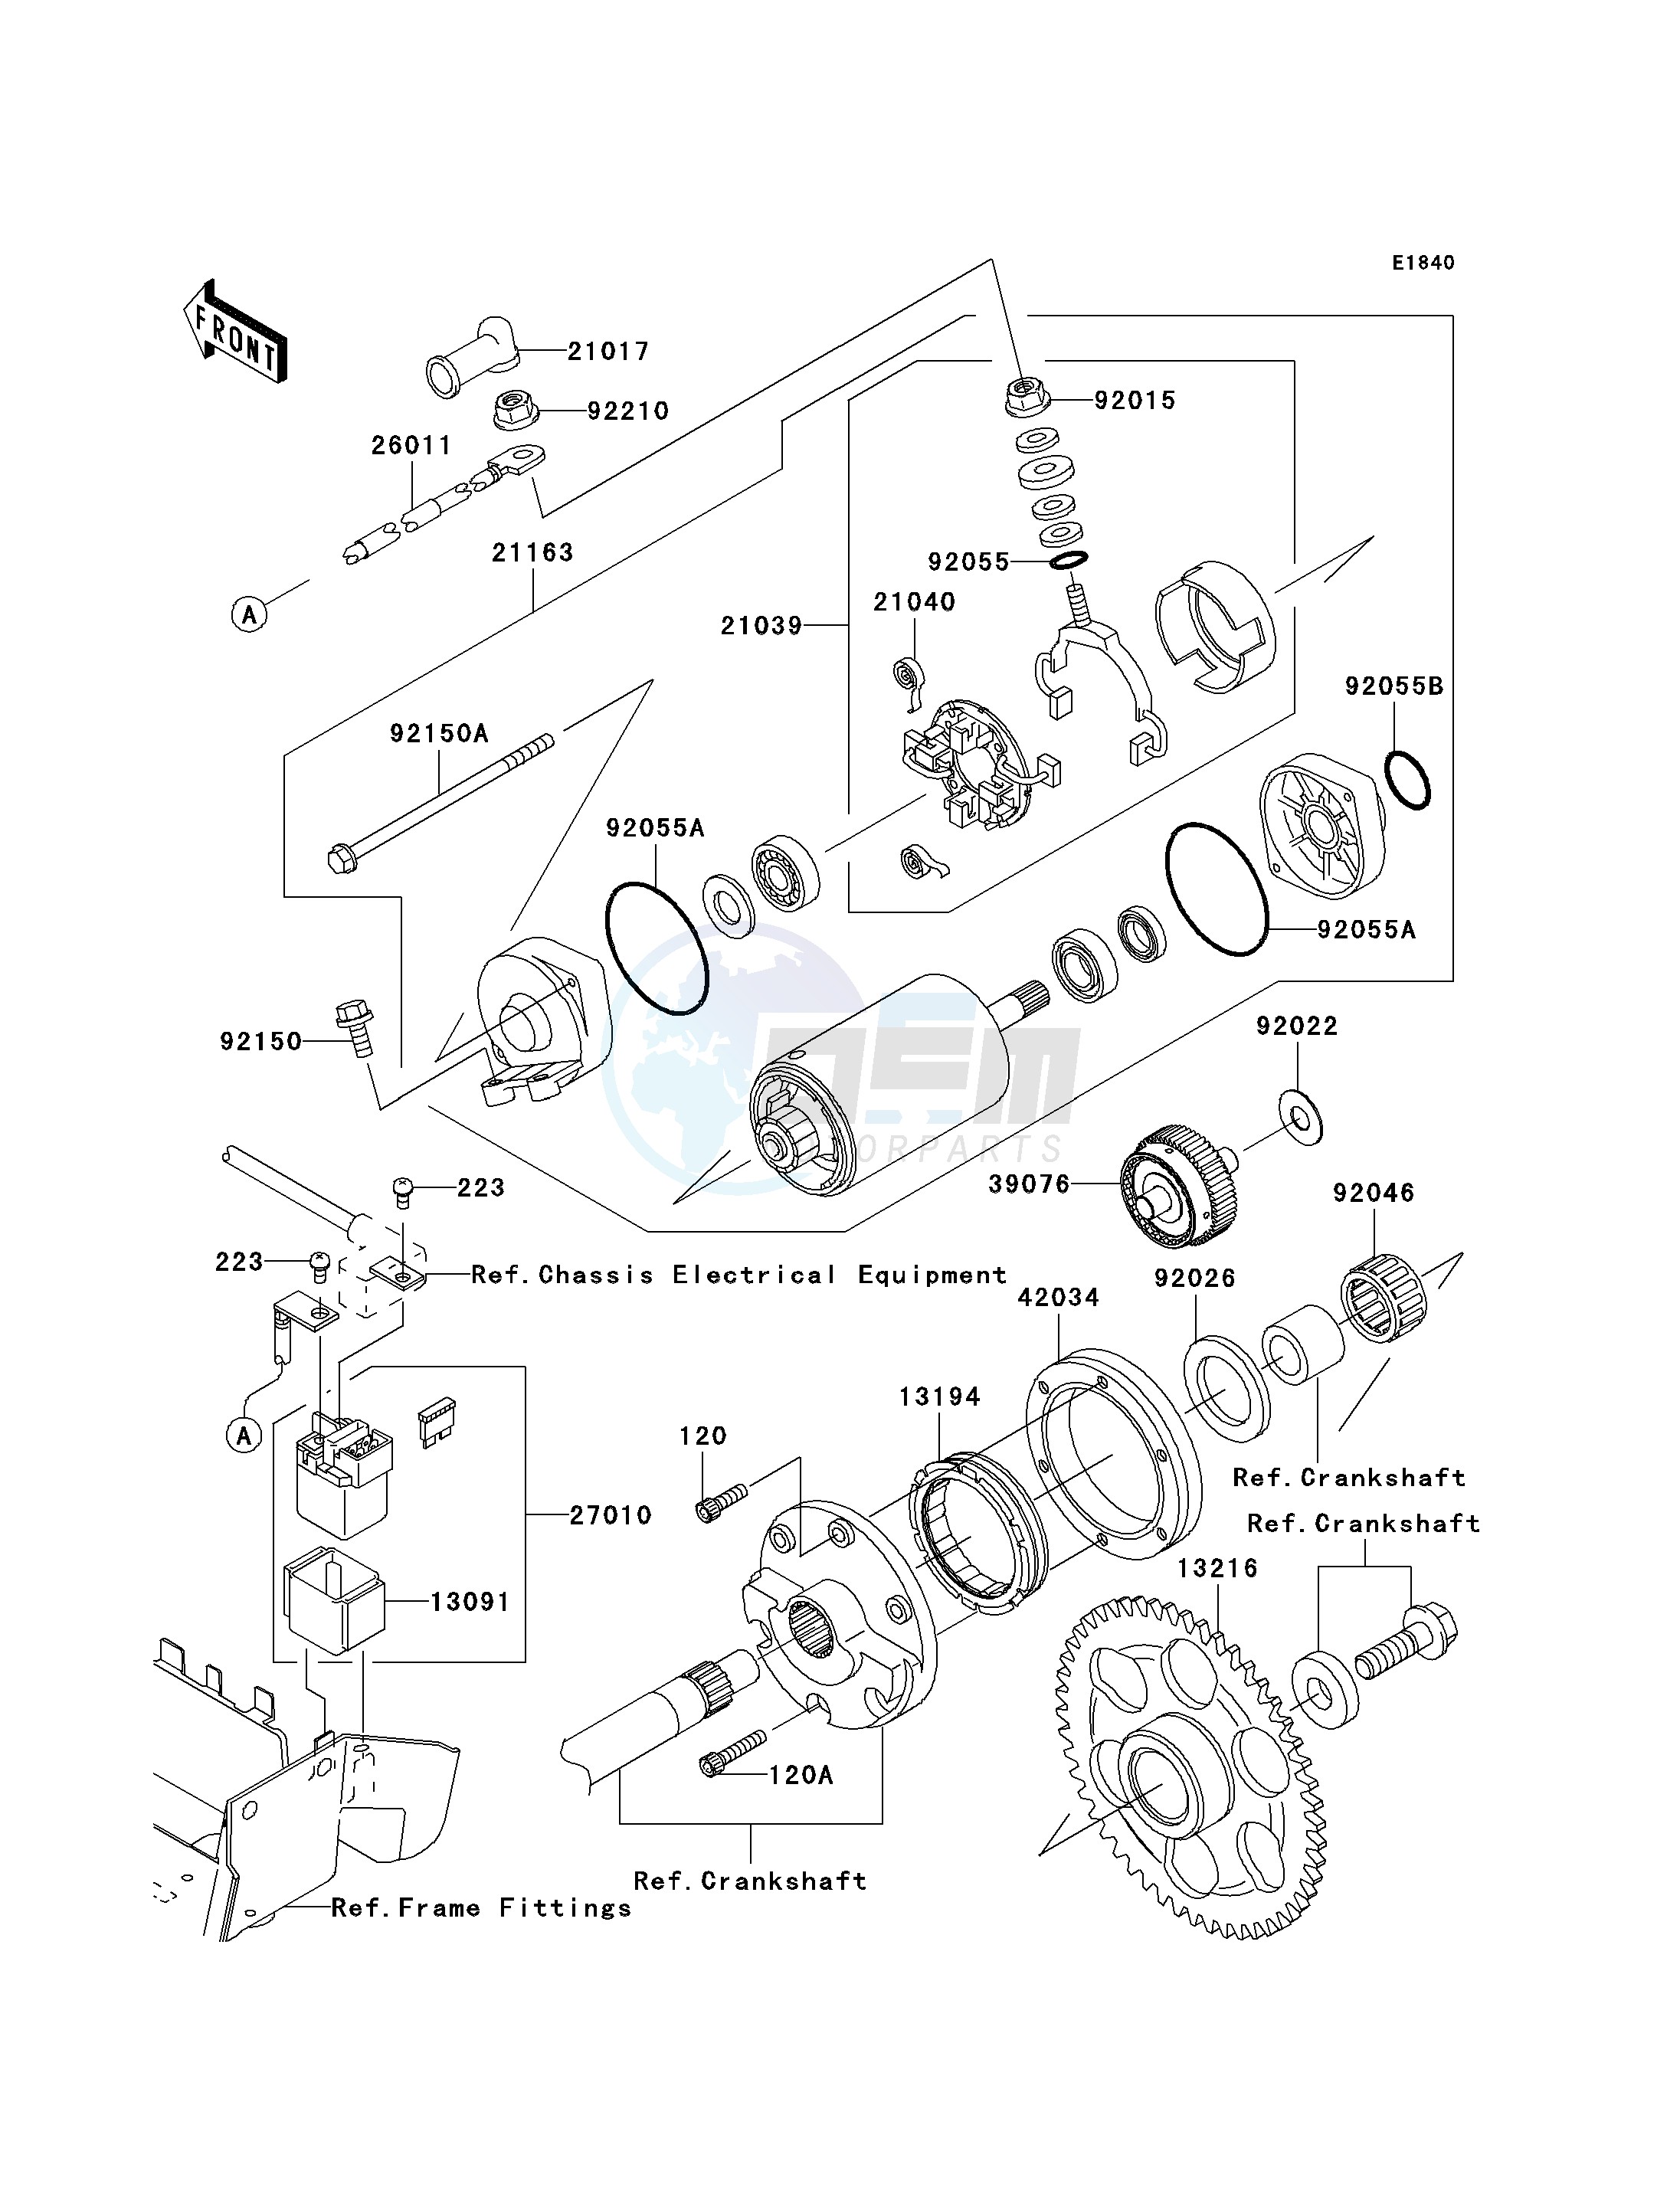 STARTER MOTOR blueprint